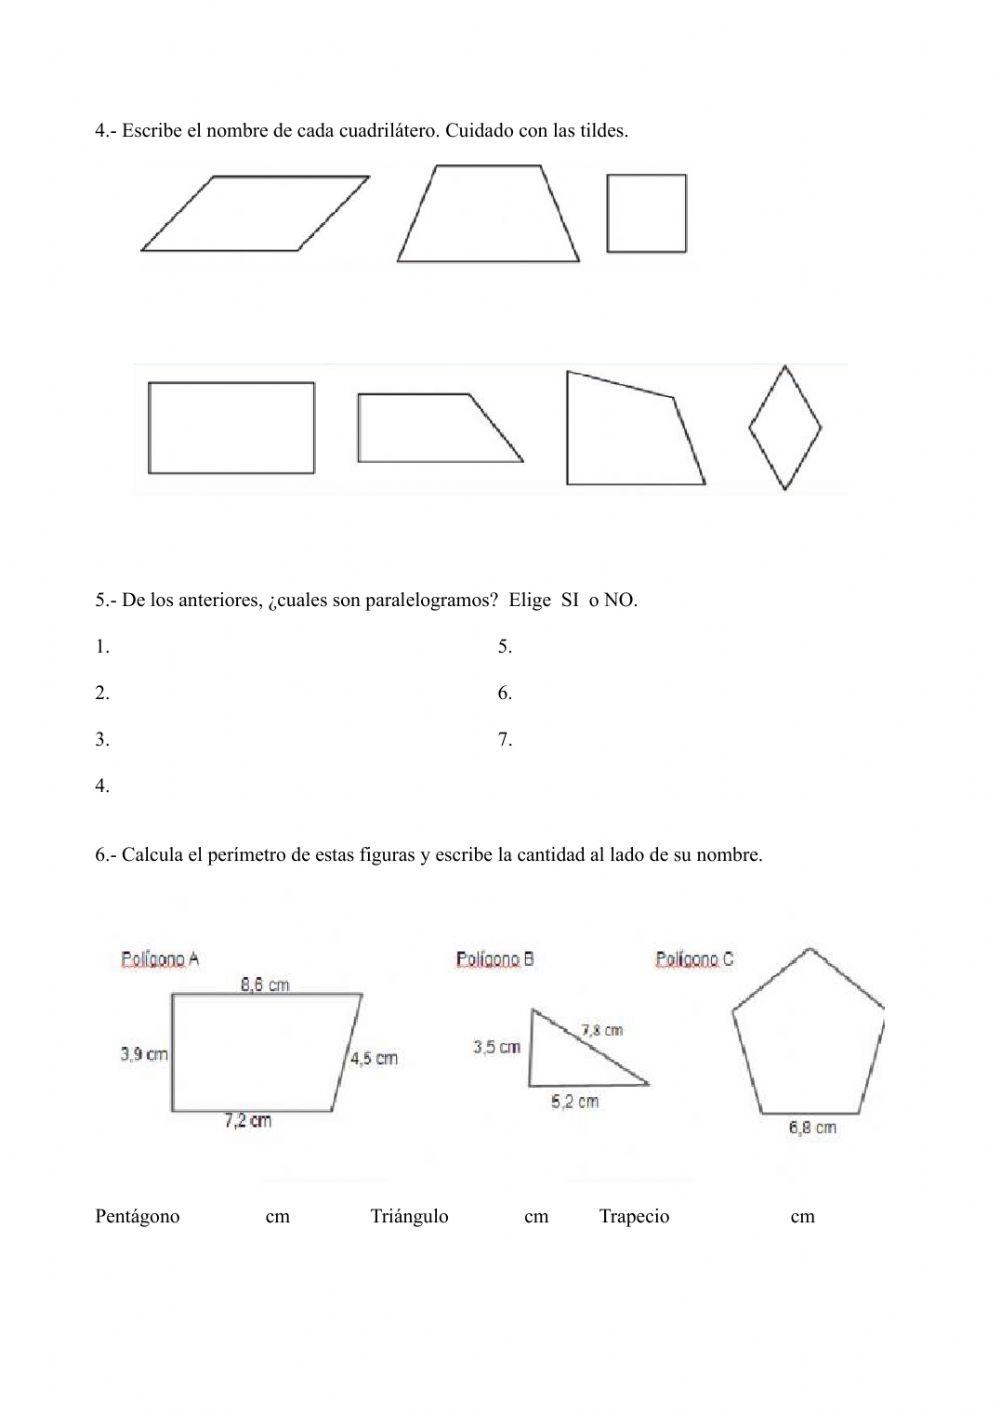 Polígonos, triángulos, círculo y circunferencia